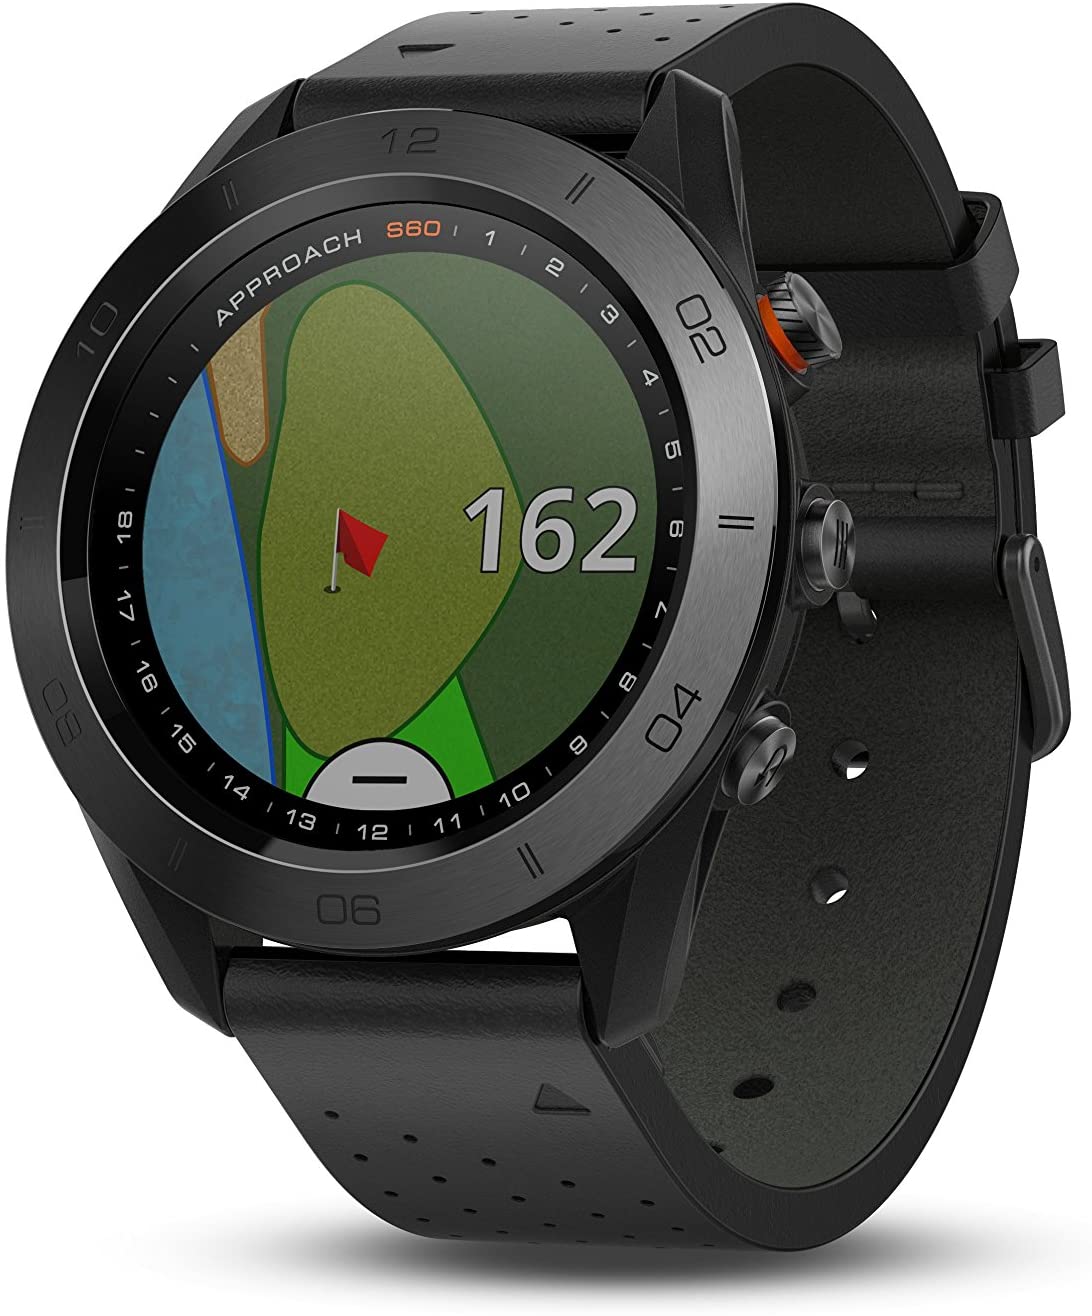 Garmin Mens Approach S60 Premium GPS Golf Watch